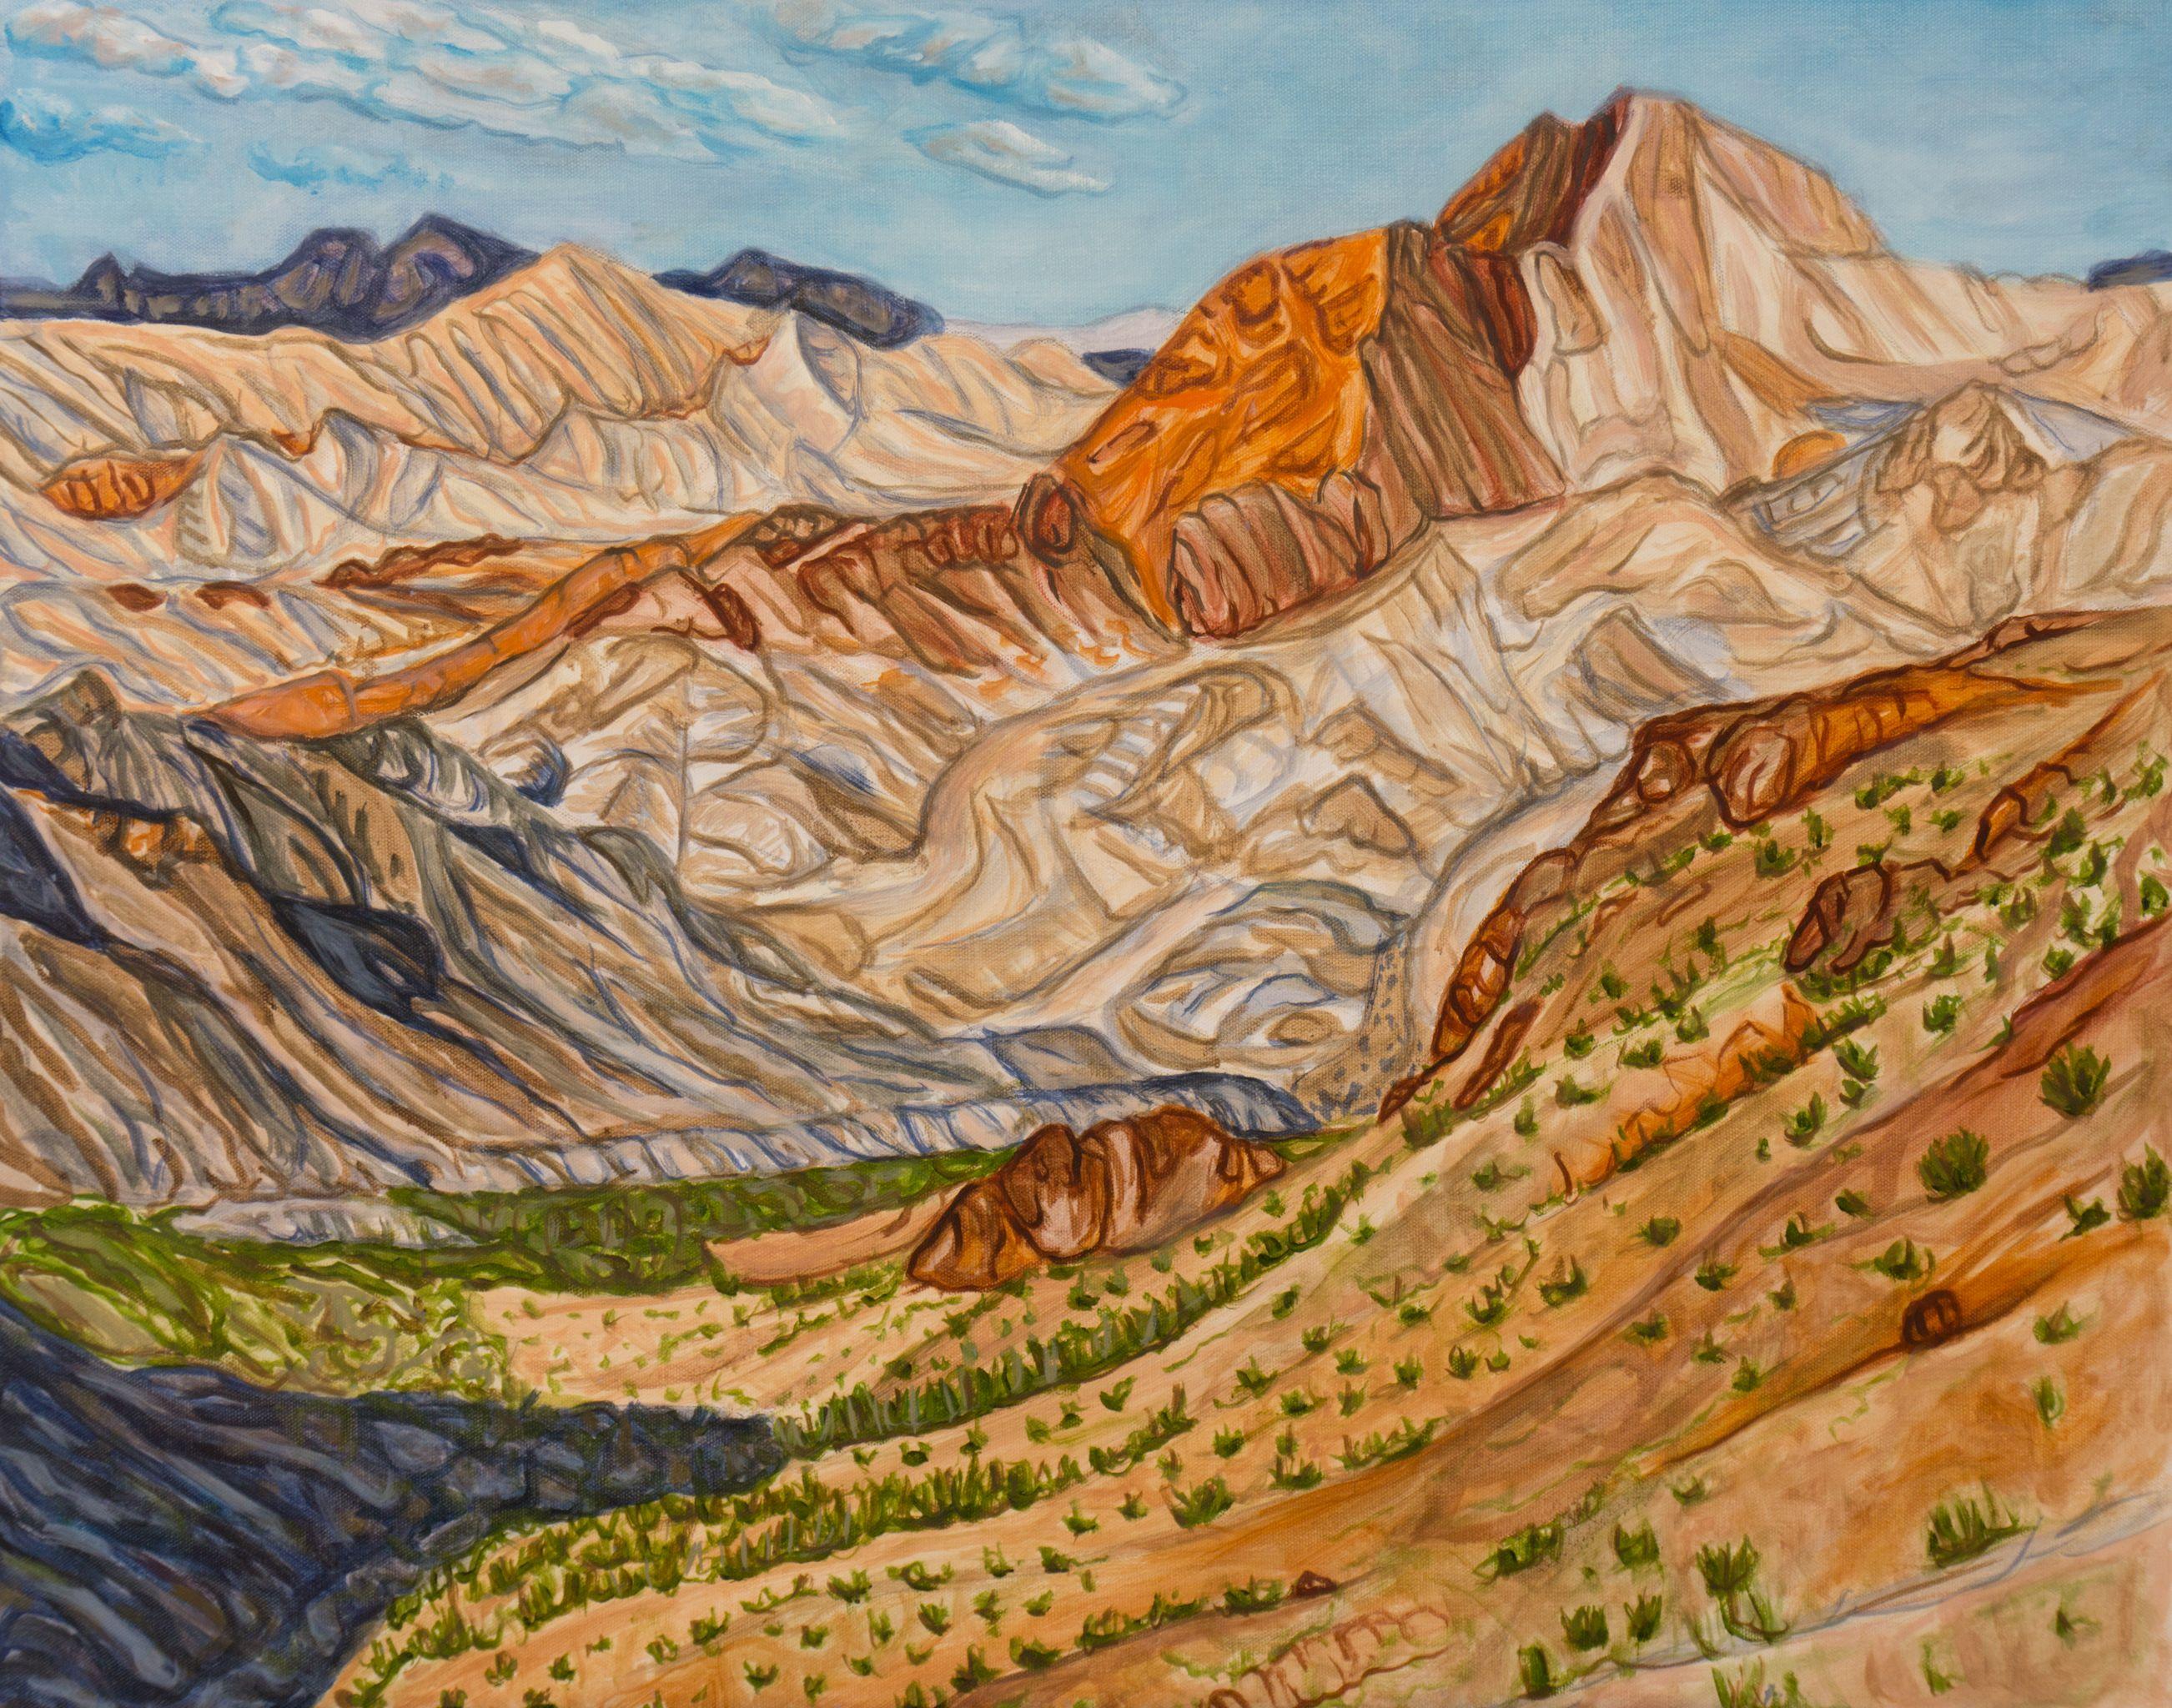 Landscape Painting Crystal DiPietro - Sentinel du sommet du rocher, peinture à l'huile sur toile